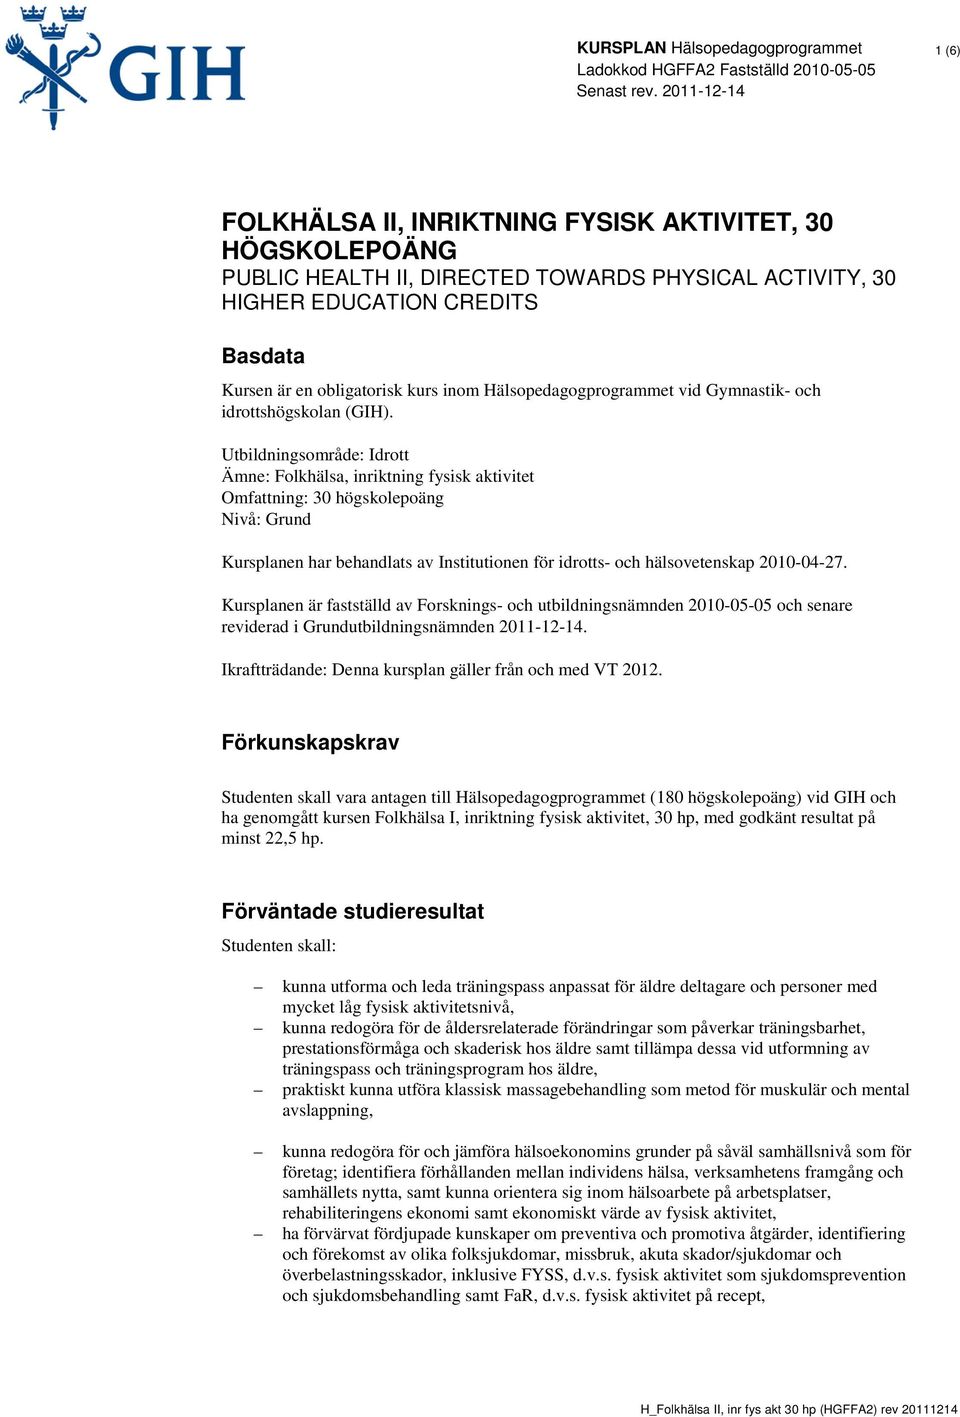 Utbildningsområde: Idrott Ämne: Folkhälsa, inriktning fysisk aktivitet Omfattning: 30 högskolepoäng Nivå: Grund Kursplanen har behandlats av Institutionen för idrotts- och hälsovetenskap 2010-04-27.